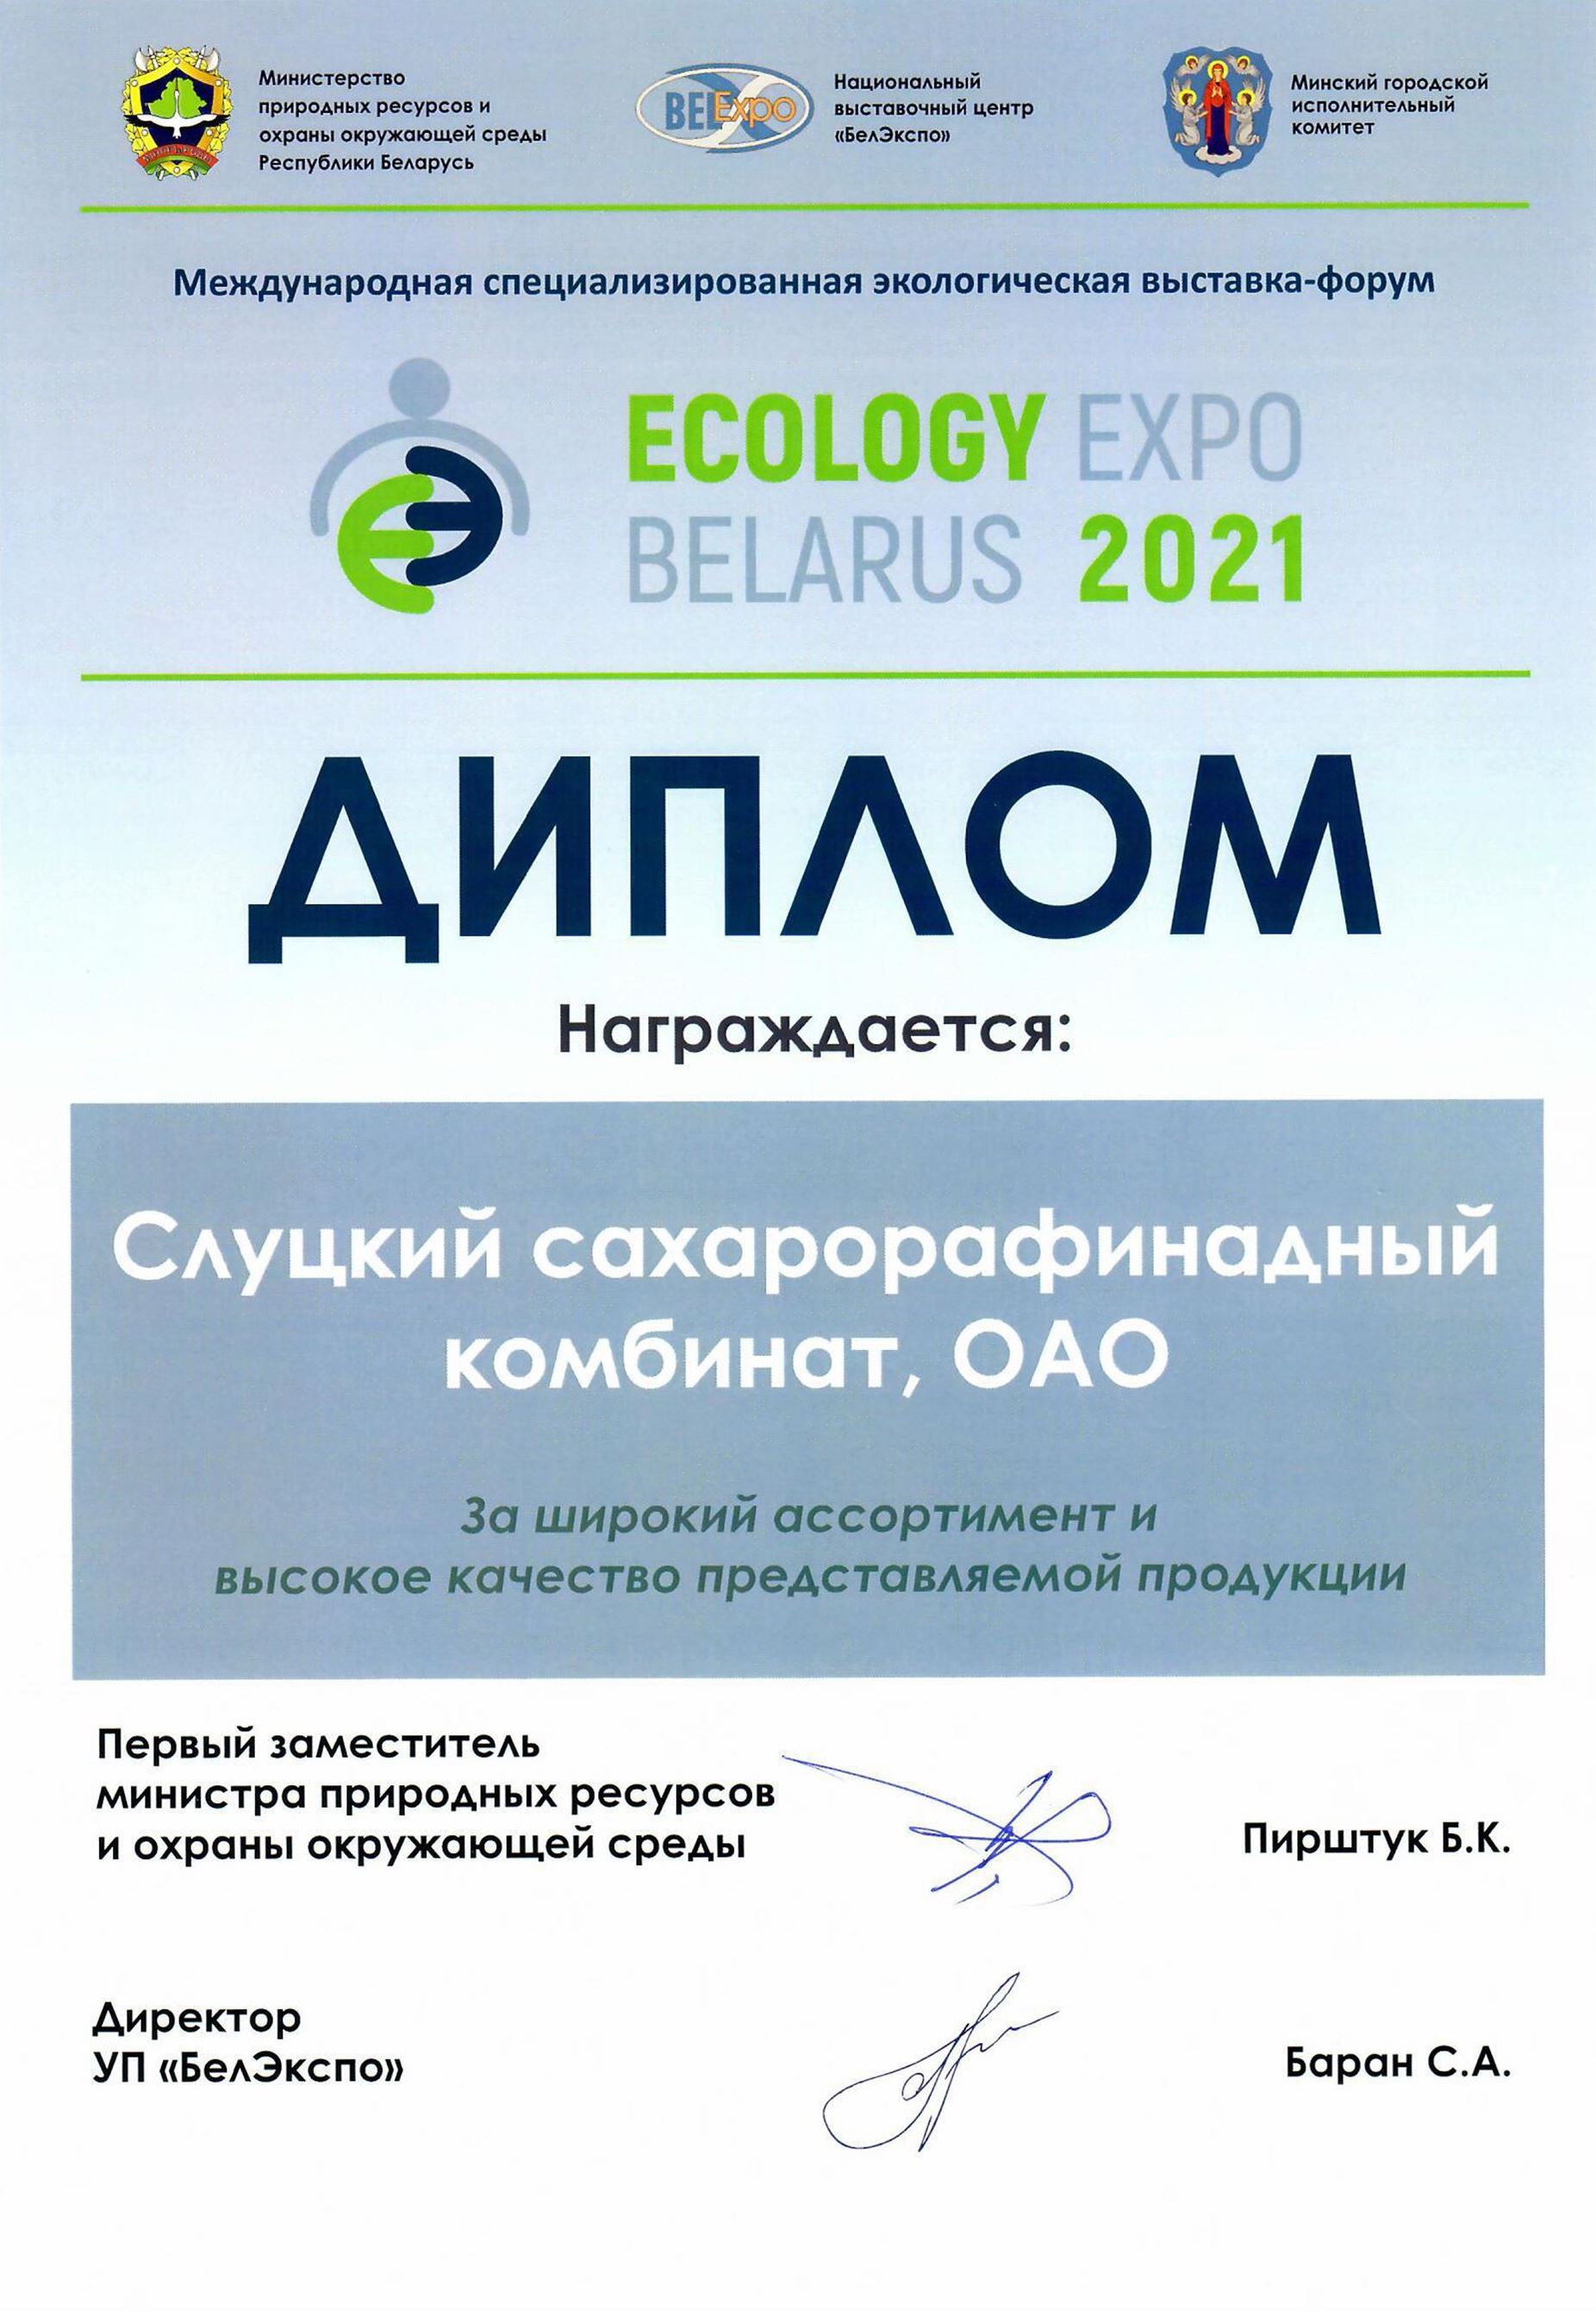 Диплом Ecology Expo.jpg